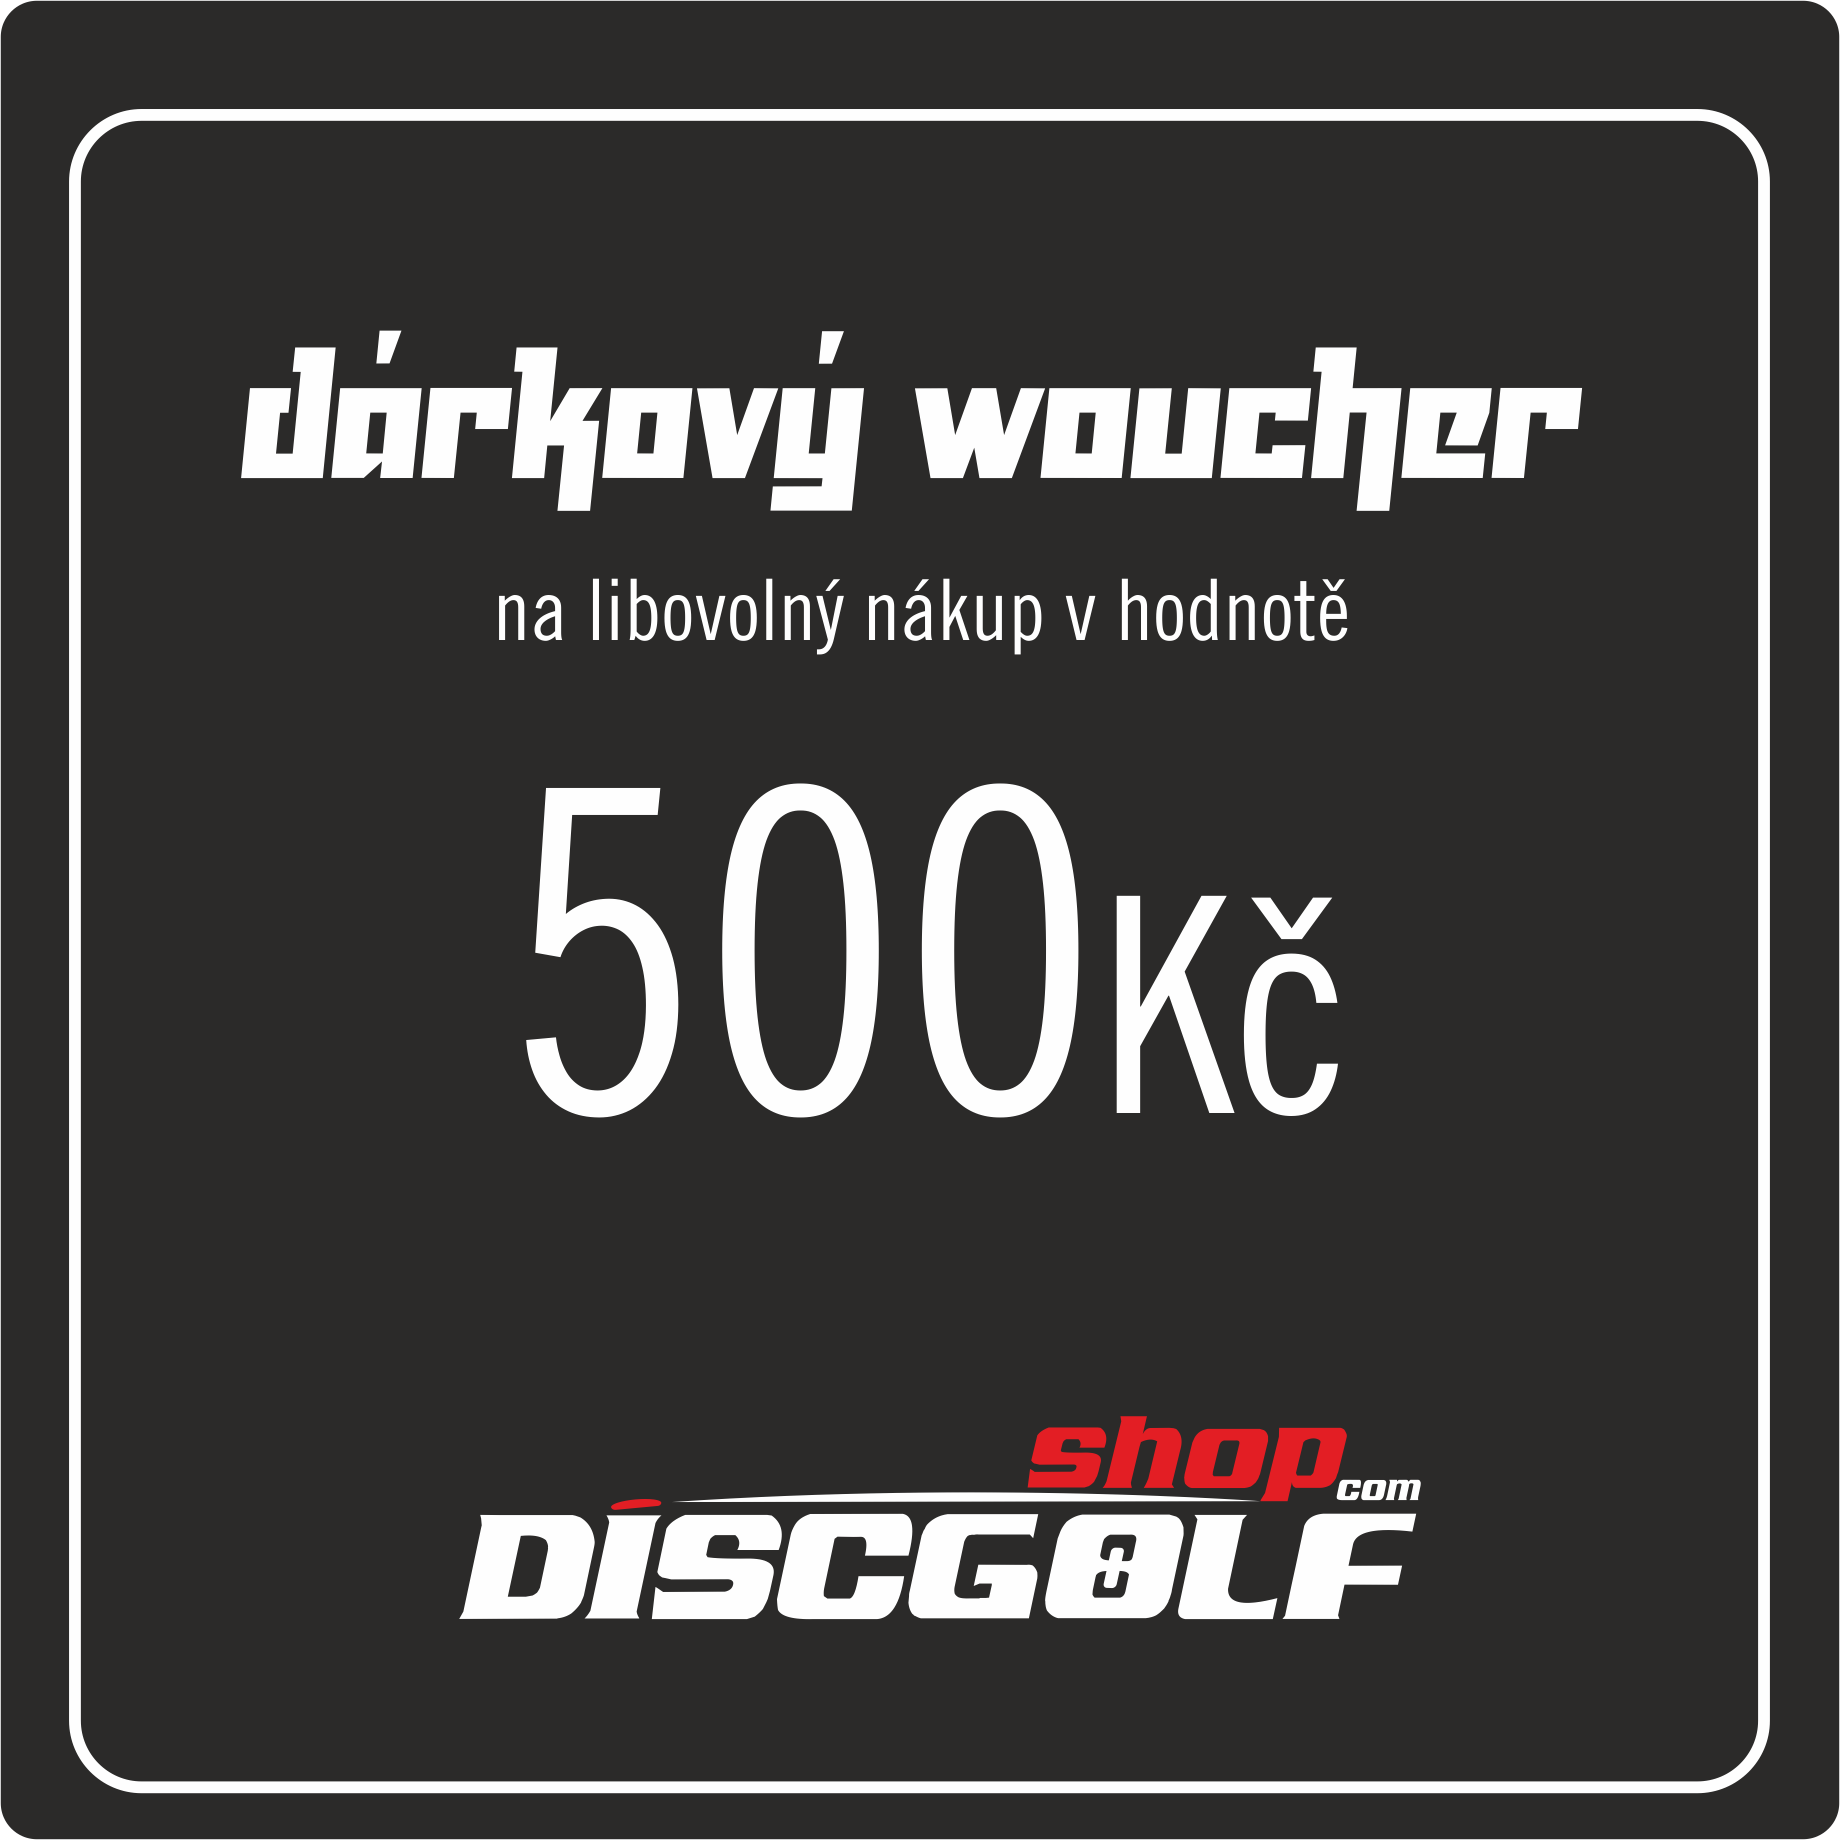 Dárkový woucher - kupon 500Kč (discgolf)